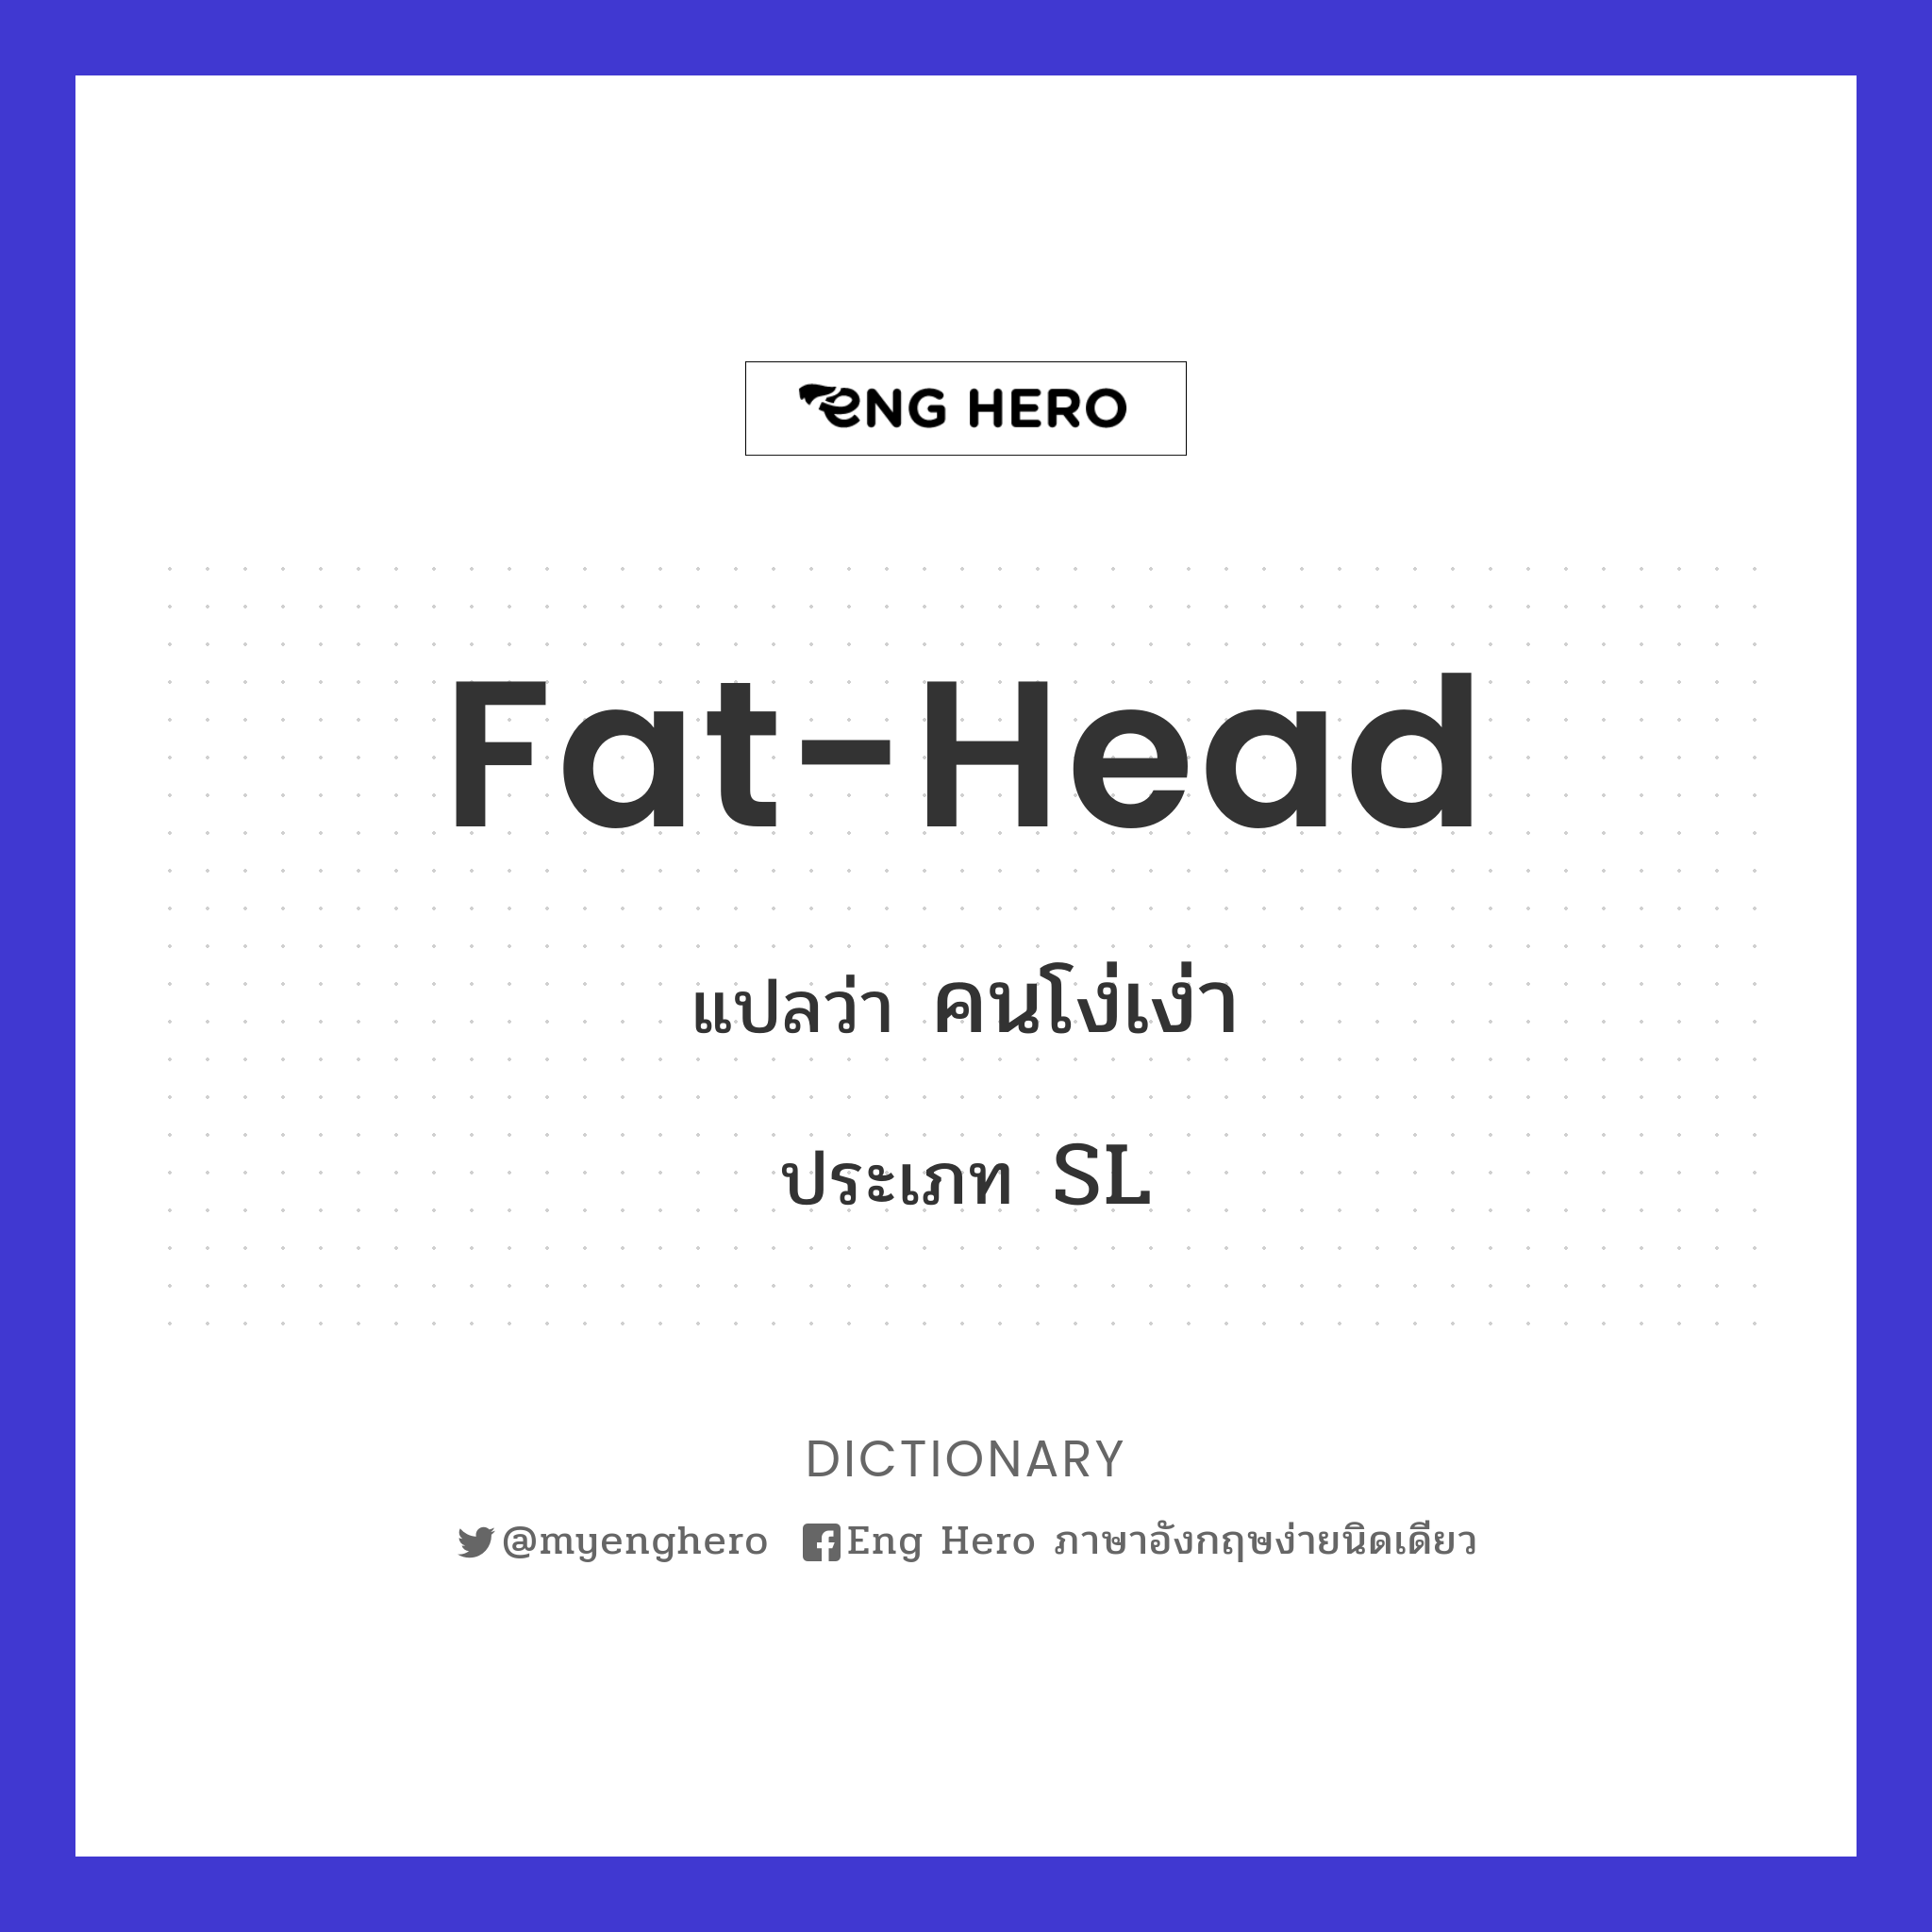 fat-head